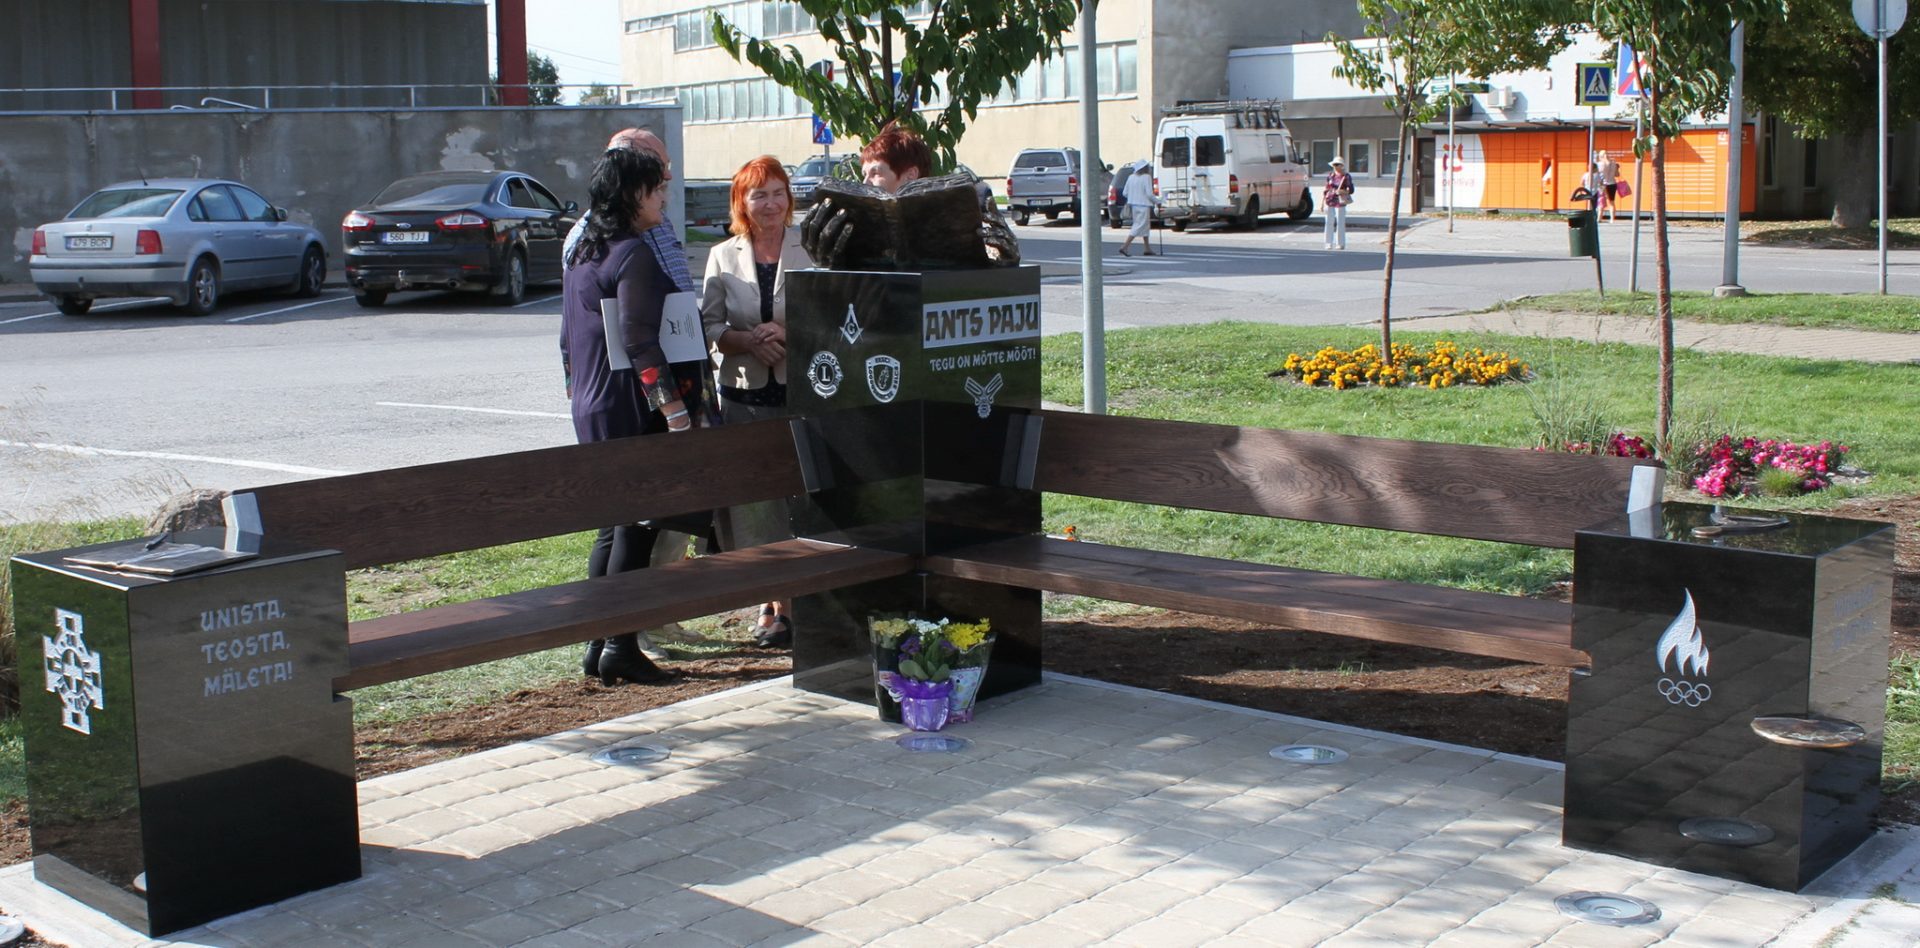 В 2018 году в парке «Сыпрузе» в Йыгева в память об Антсе Паю был открыт мемориальная скамейка скульптора Тауно Кангро — это была инициатива членов Йыгеваского клуба львов — Антс Паю был основателем этого клуба и до конца своих дней был его президентом.